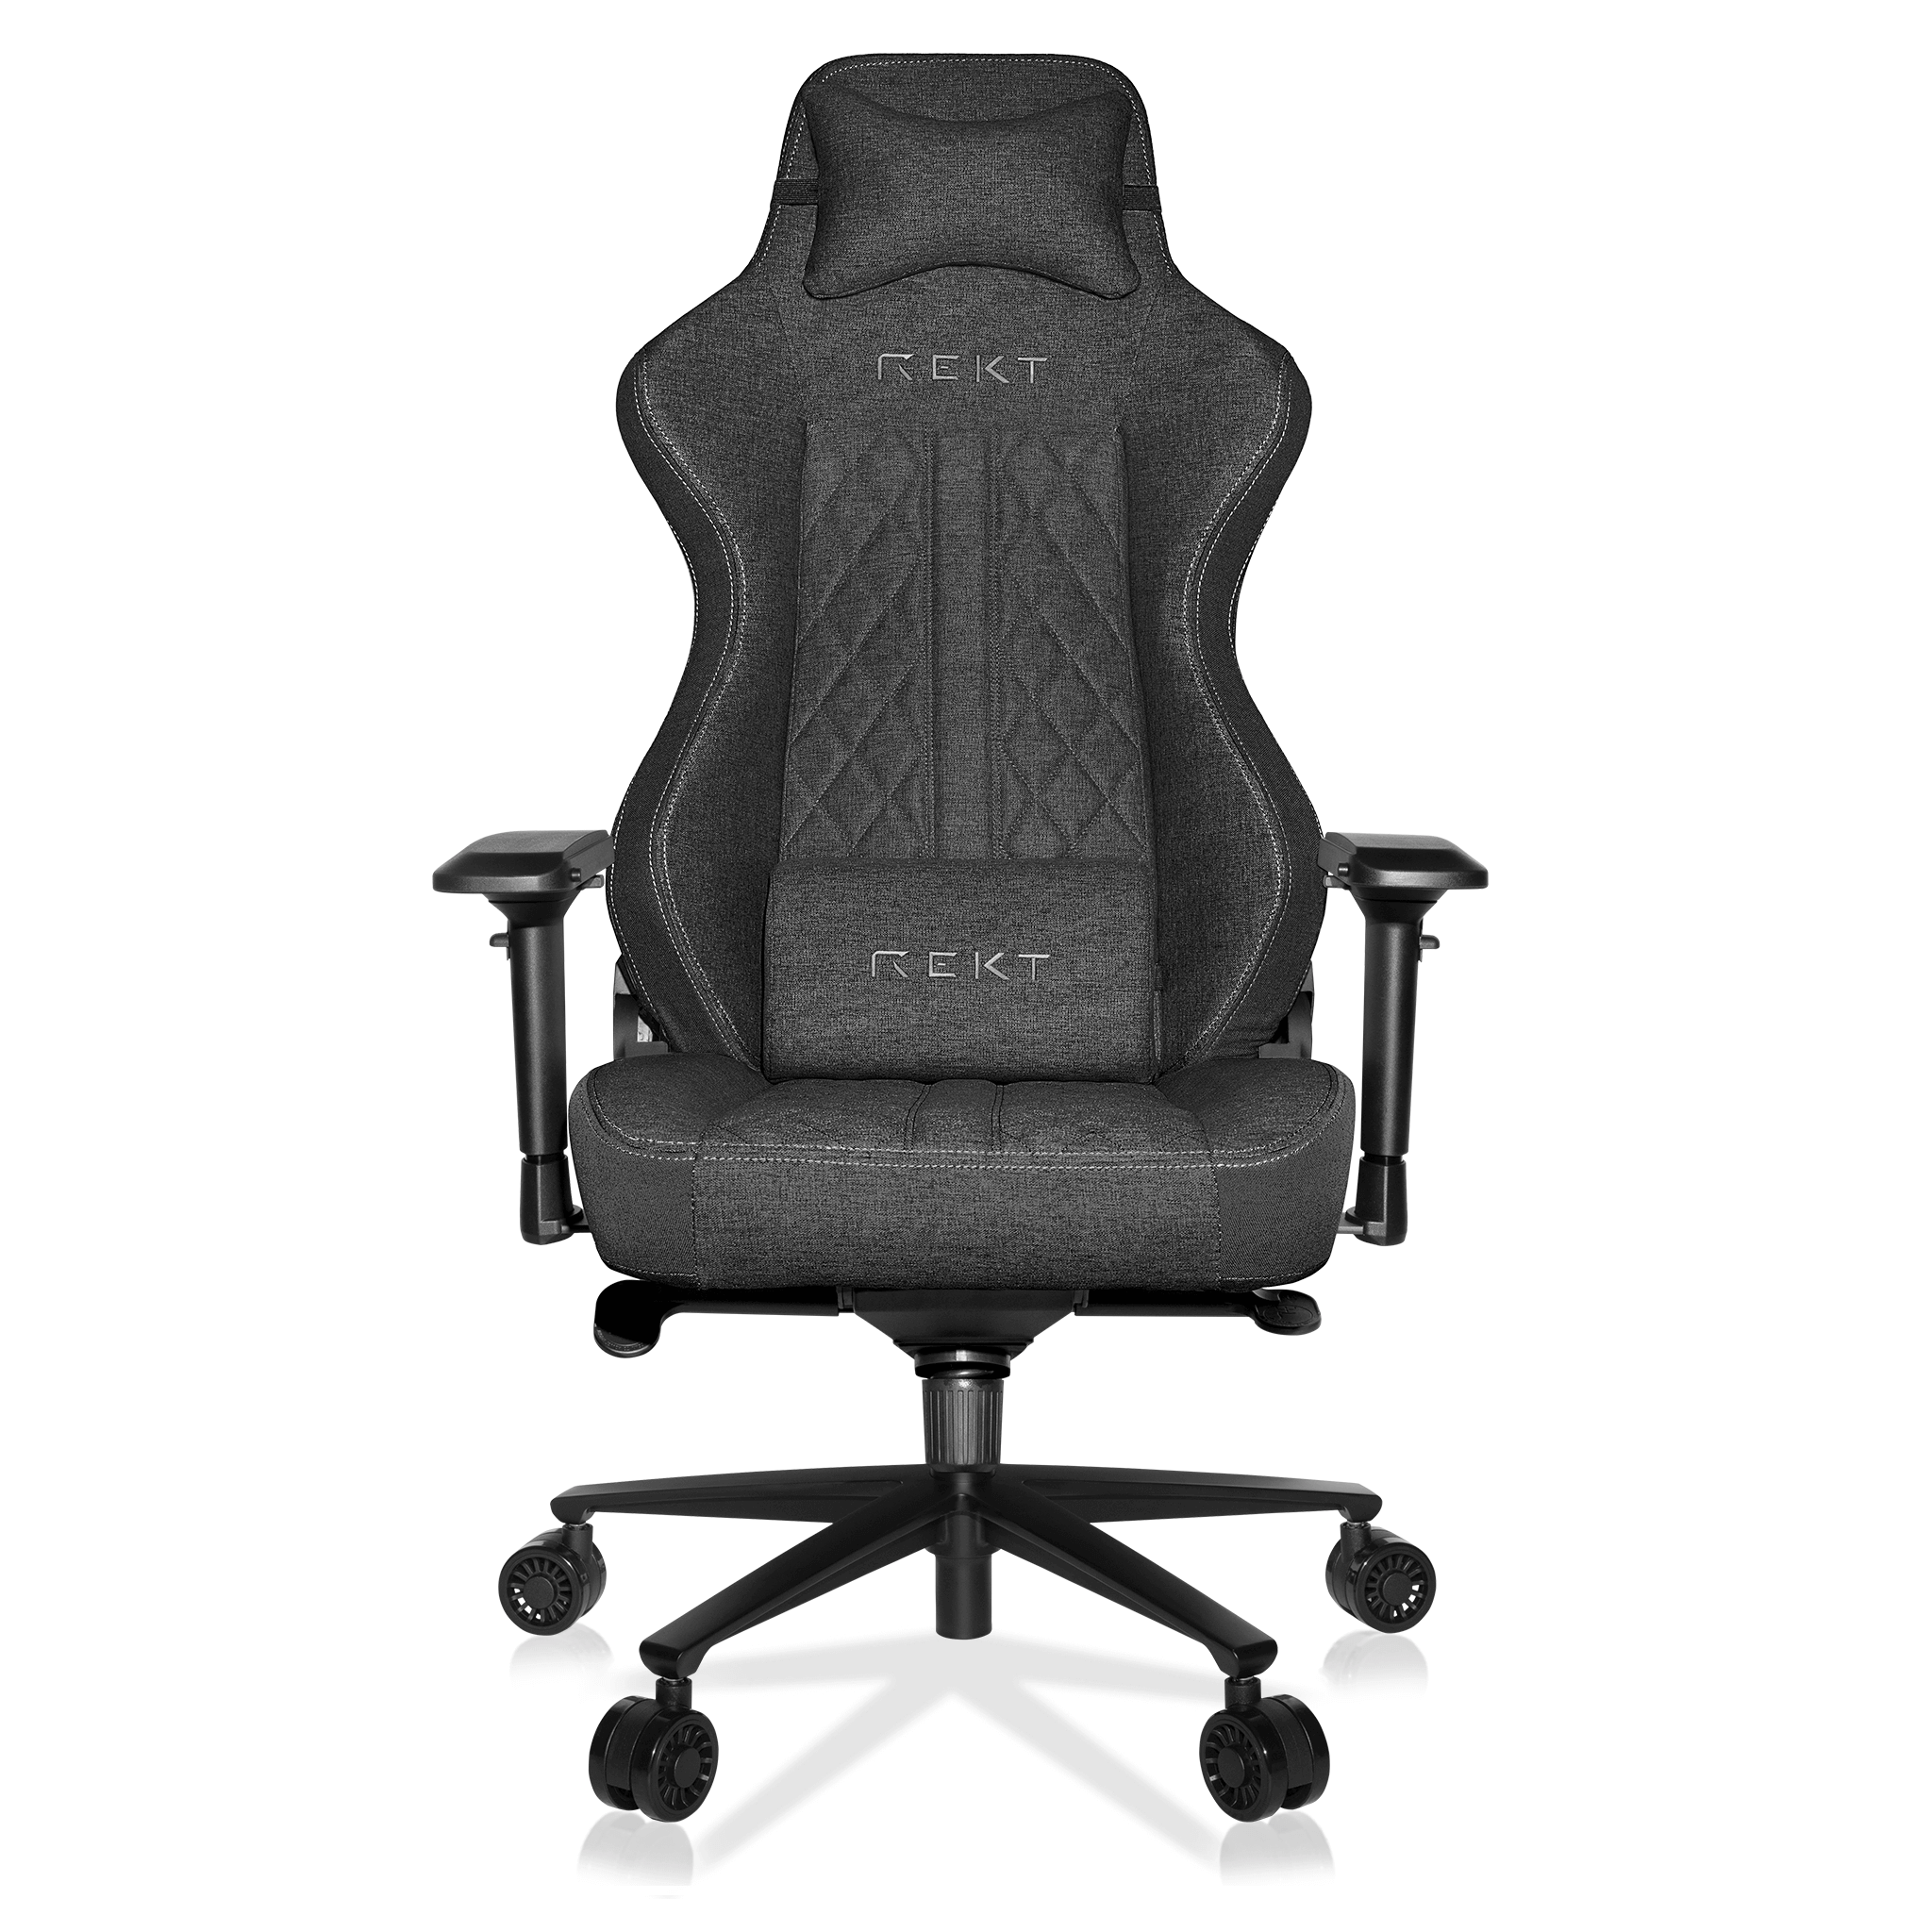 Chaise gaming chaise de bureau BLIZZARD noire